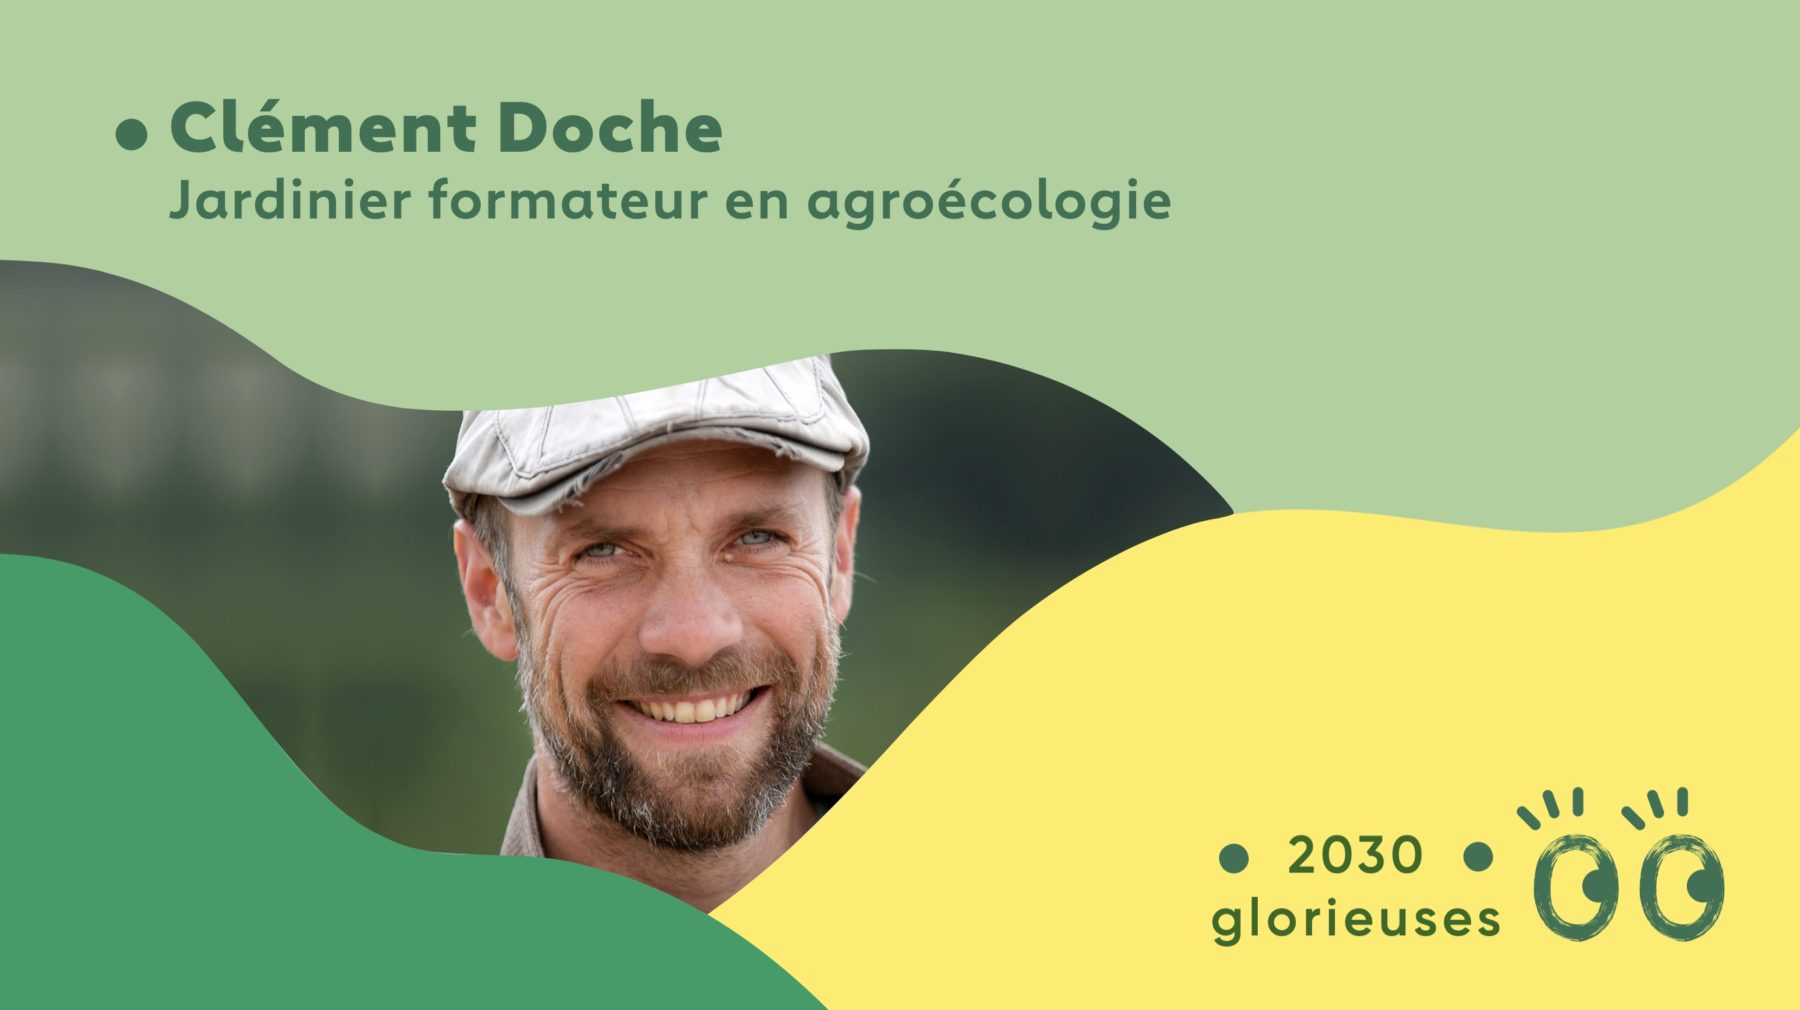 2030 Glorieuses #31 : Clément Doche : “Être paysan, c'est le métier le plus beau"